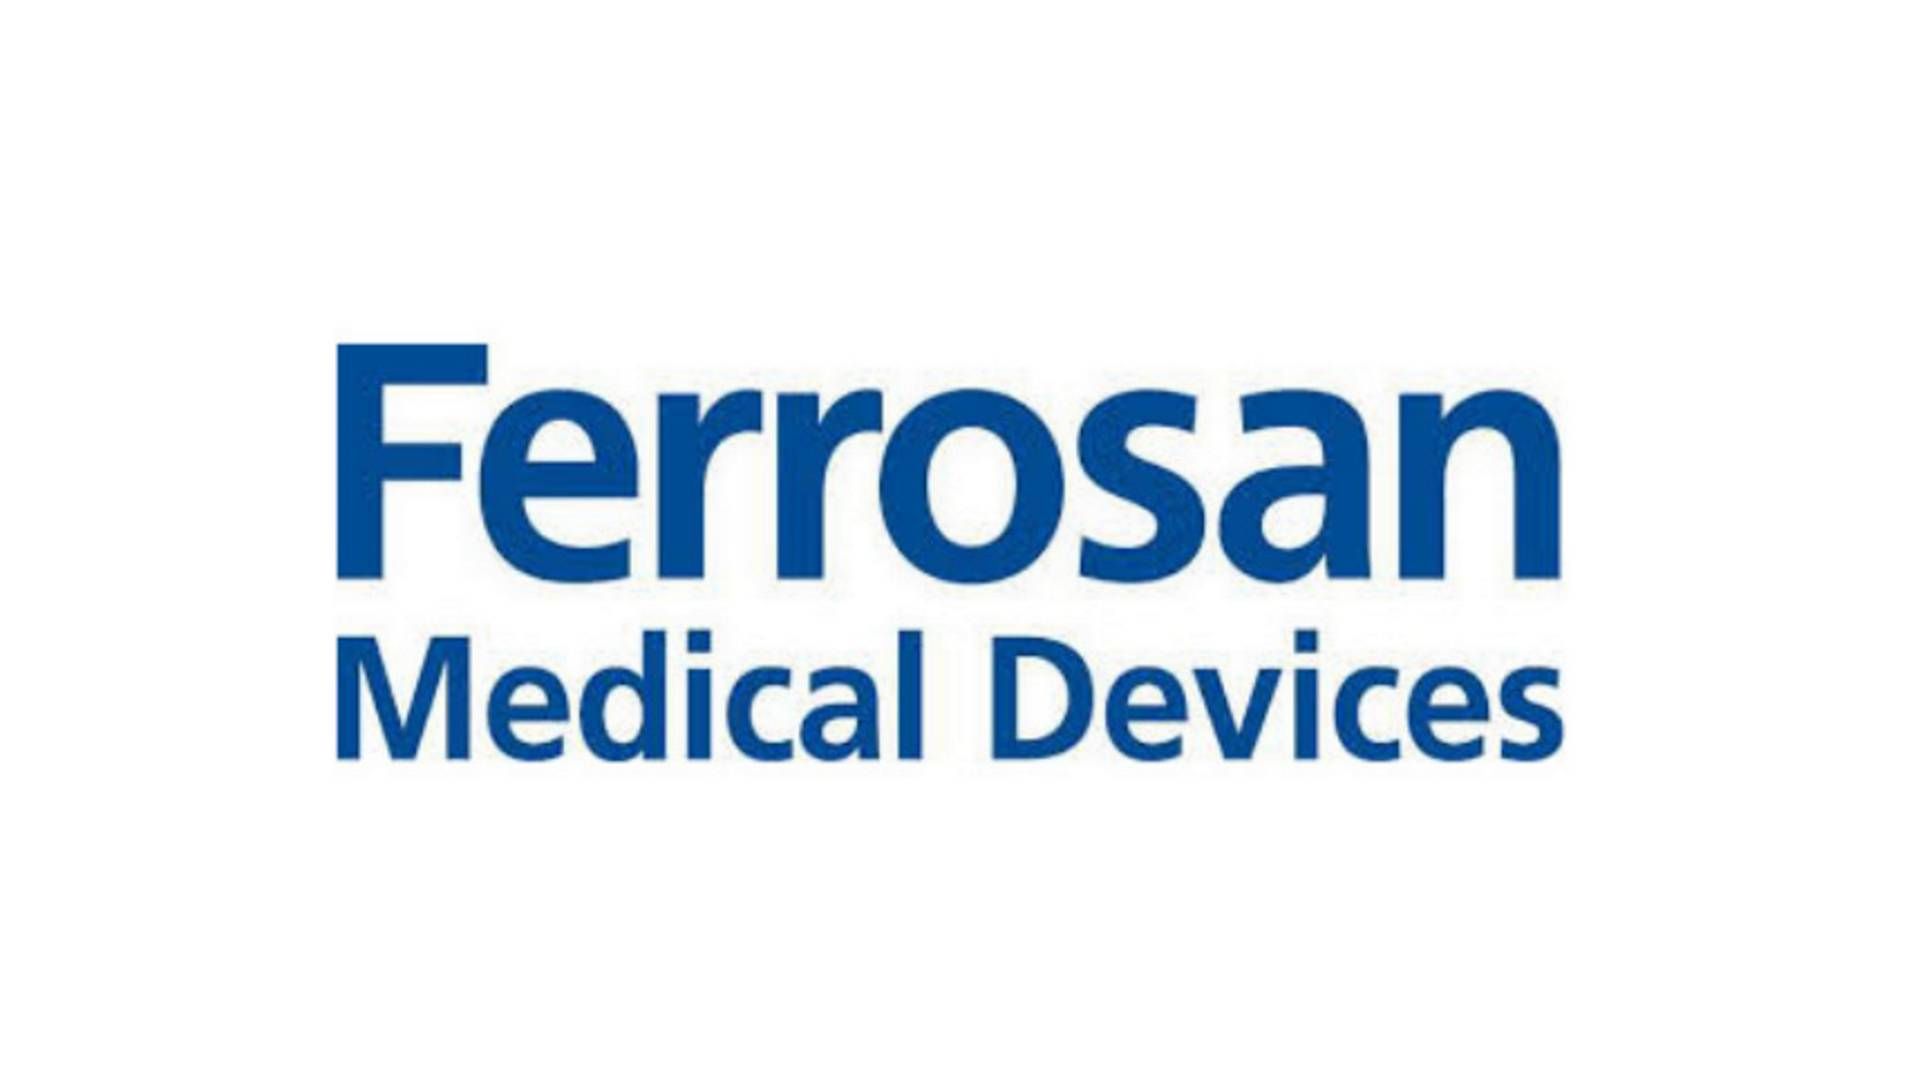 Ferrosan blev i den seneste handel angiveligt værdisat til ca. 5 mia. kr. | Foto: Ferrosan/PR